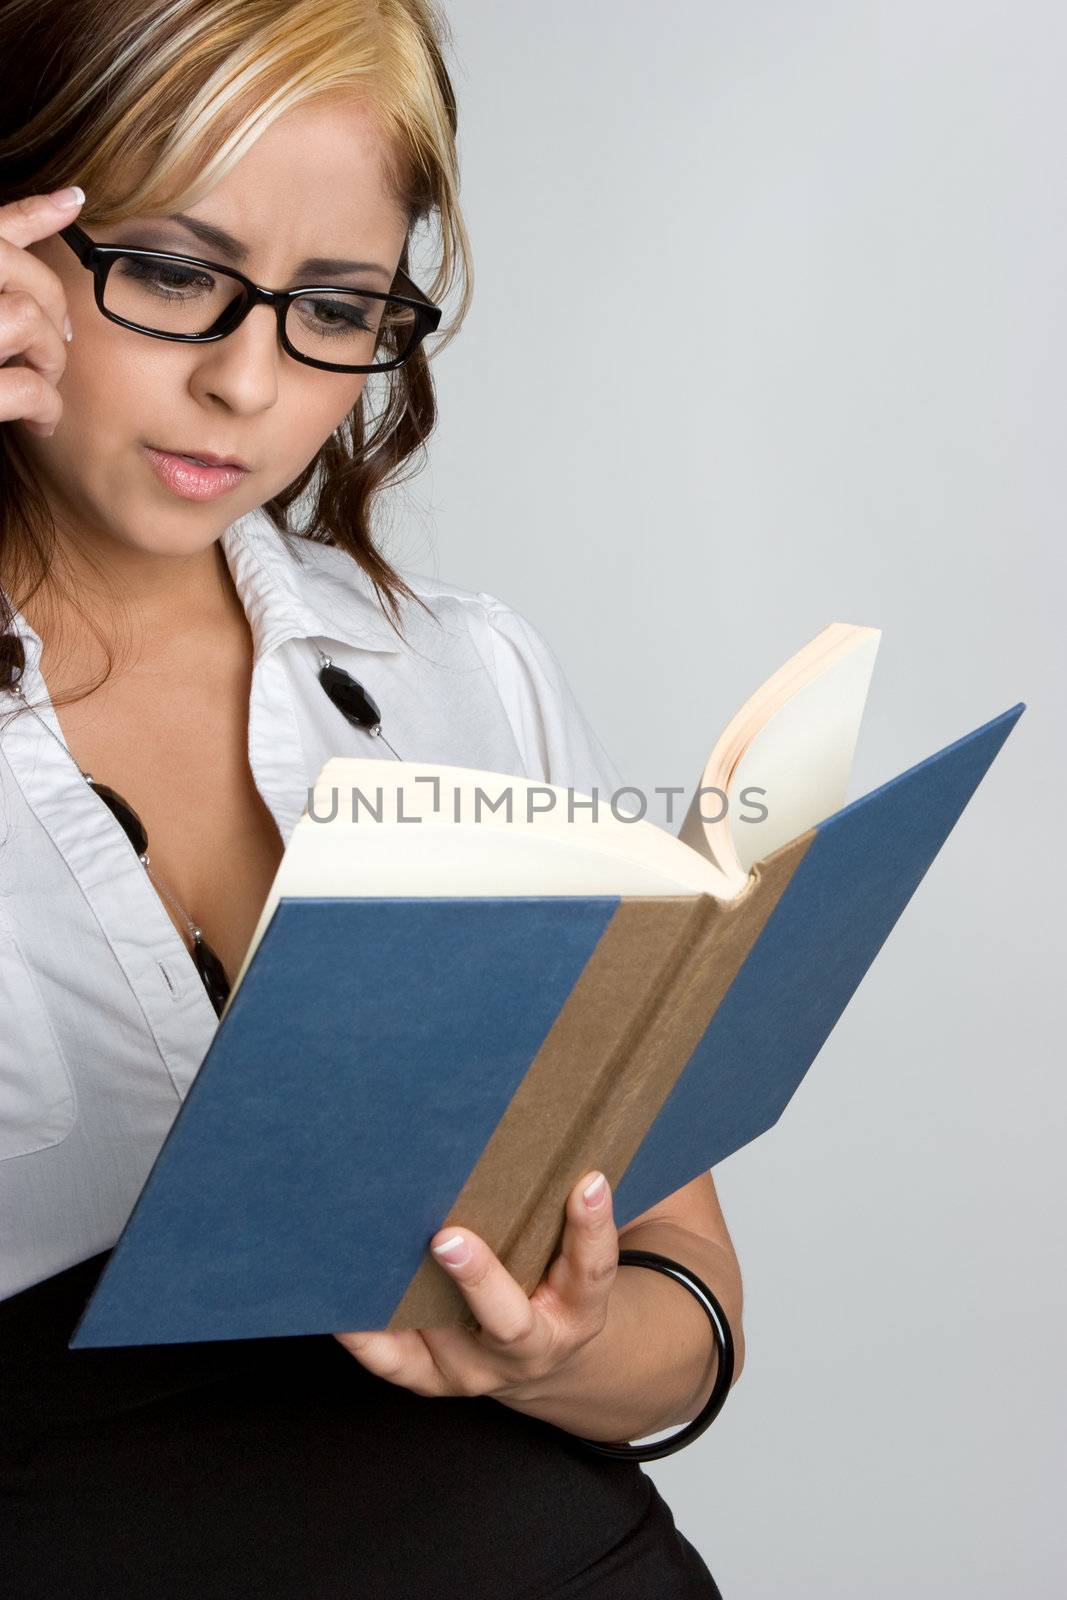 Book Woman by keeweeboy